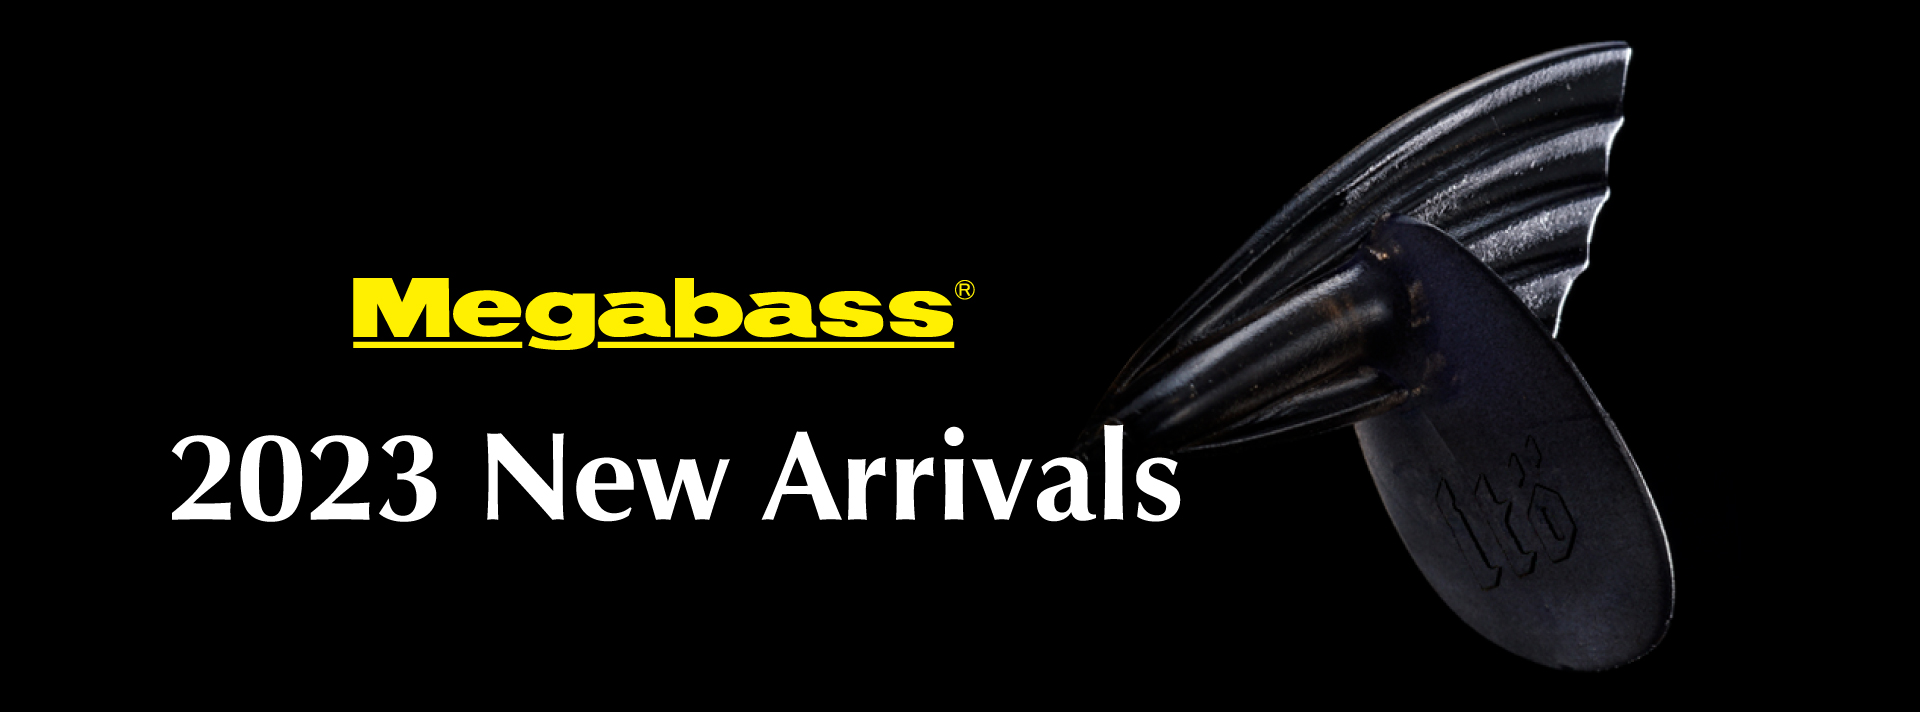 Megabass 2023 New Arrivals